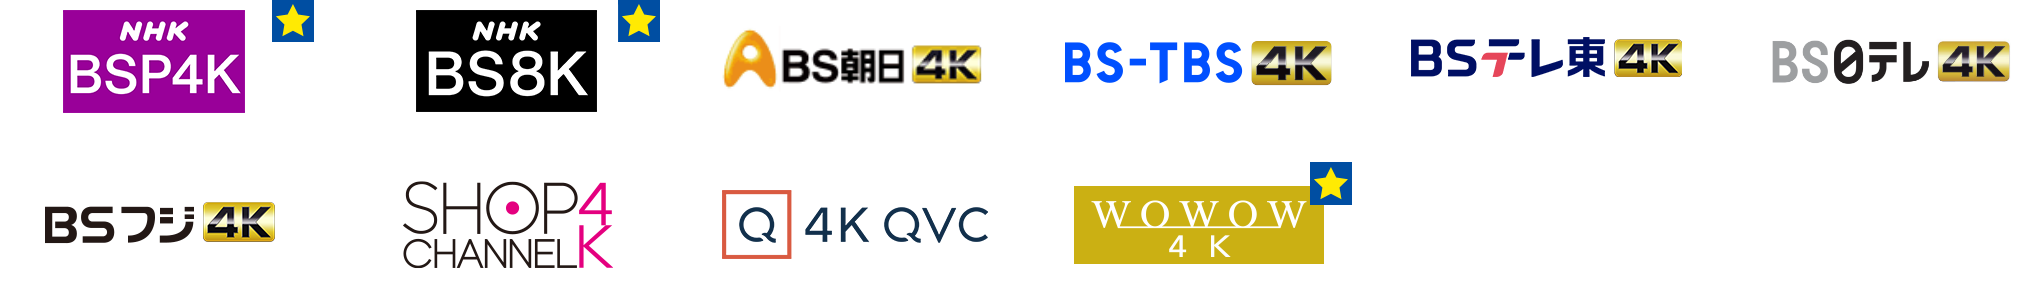 NHK BSP4K、NHK BS8K、ＢＳ朝日4K、BS-TBS 4K、BSテレ東4K、ＢＳ日テレ4K、BSフジ4K、ショップチャンネル 4K、4K QVC、J SPORTS 1~4 (4K)、スターチャンネル4K、日本映画＋時代劇 4K、スカチャン1～2 4K、WOWOW 4Kを光回線で見て、スポーツ観戦、コンサート・ライブ鑑賞を楽しむ